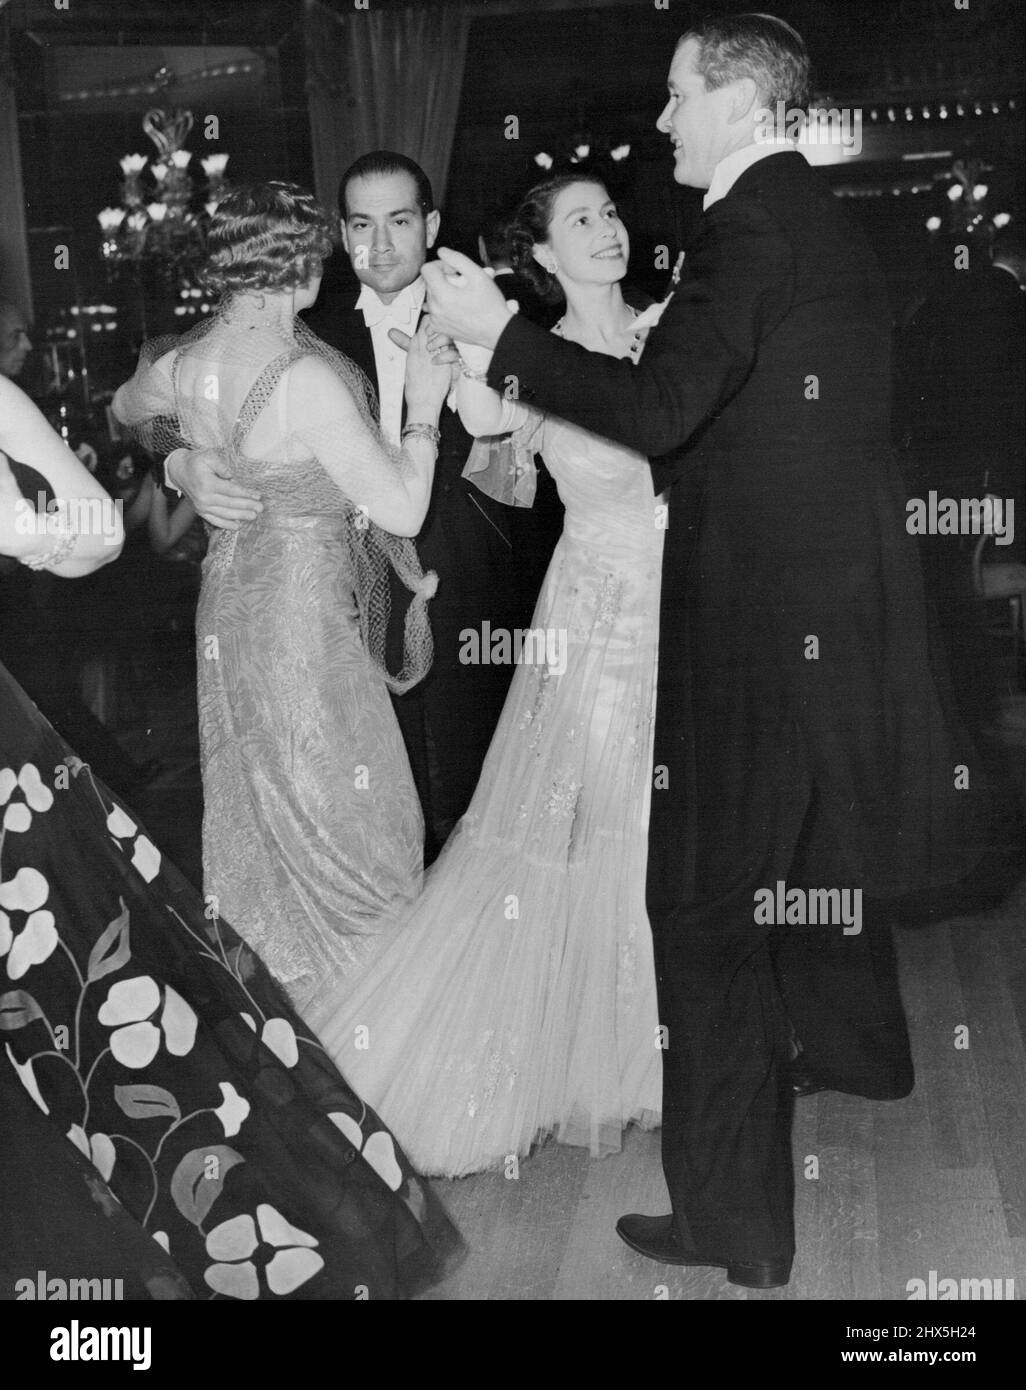 Prinzessin Elizabeth tanzt im Dorchester -- Prinzessin Elizabeth tanzt heute Abend im schwungvollen Abendkleid mit engen Falten beim Midsummer Festival Ball im Dorchester Hotel, London. 27. Juni 1951. (Foto von Reuterphoto). Stockfoto